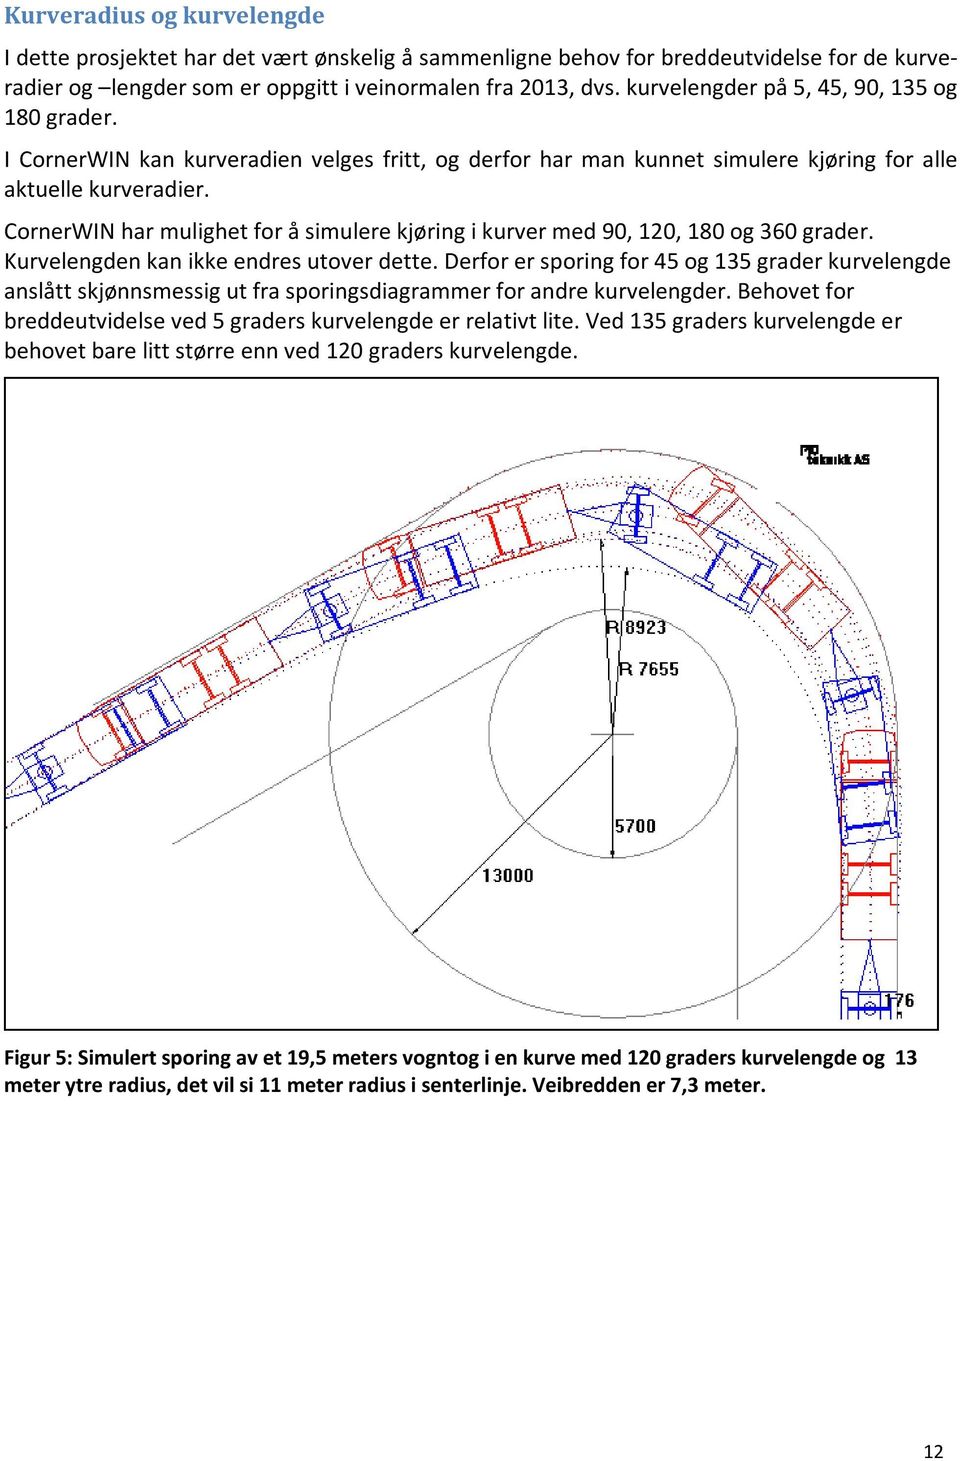 CornerWIN har mulighet for å simulere kjøring i kurver med 90, 120, 180 og 360 grader. Kurvelengden kan ikke endres utover dette.